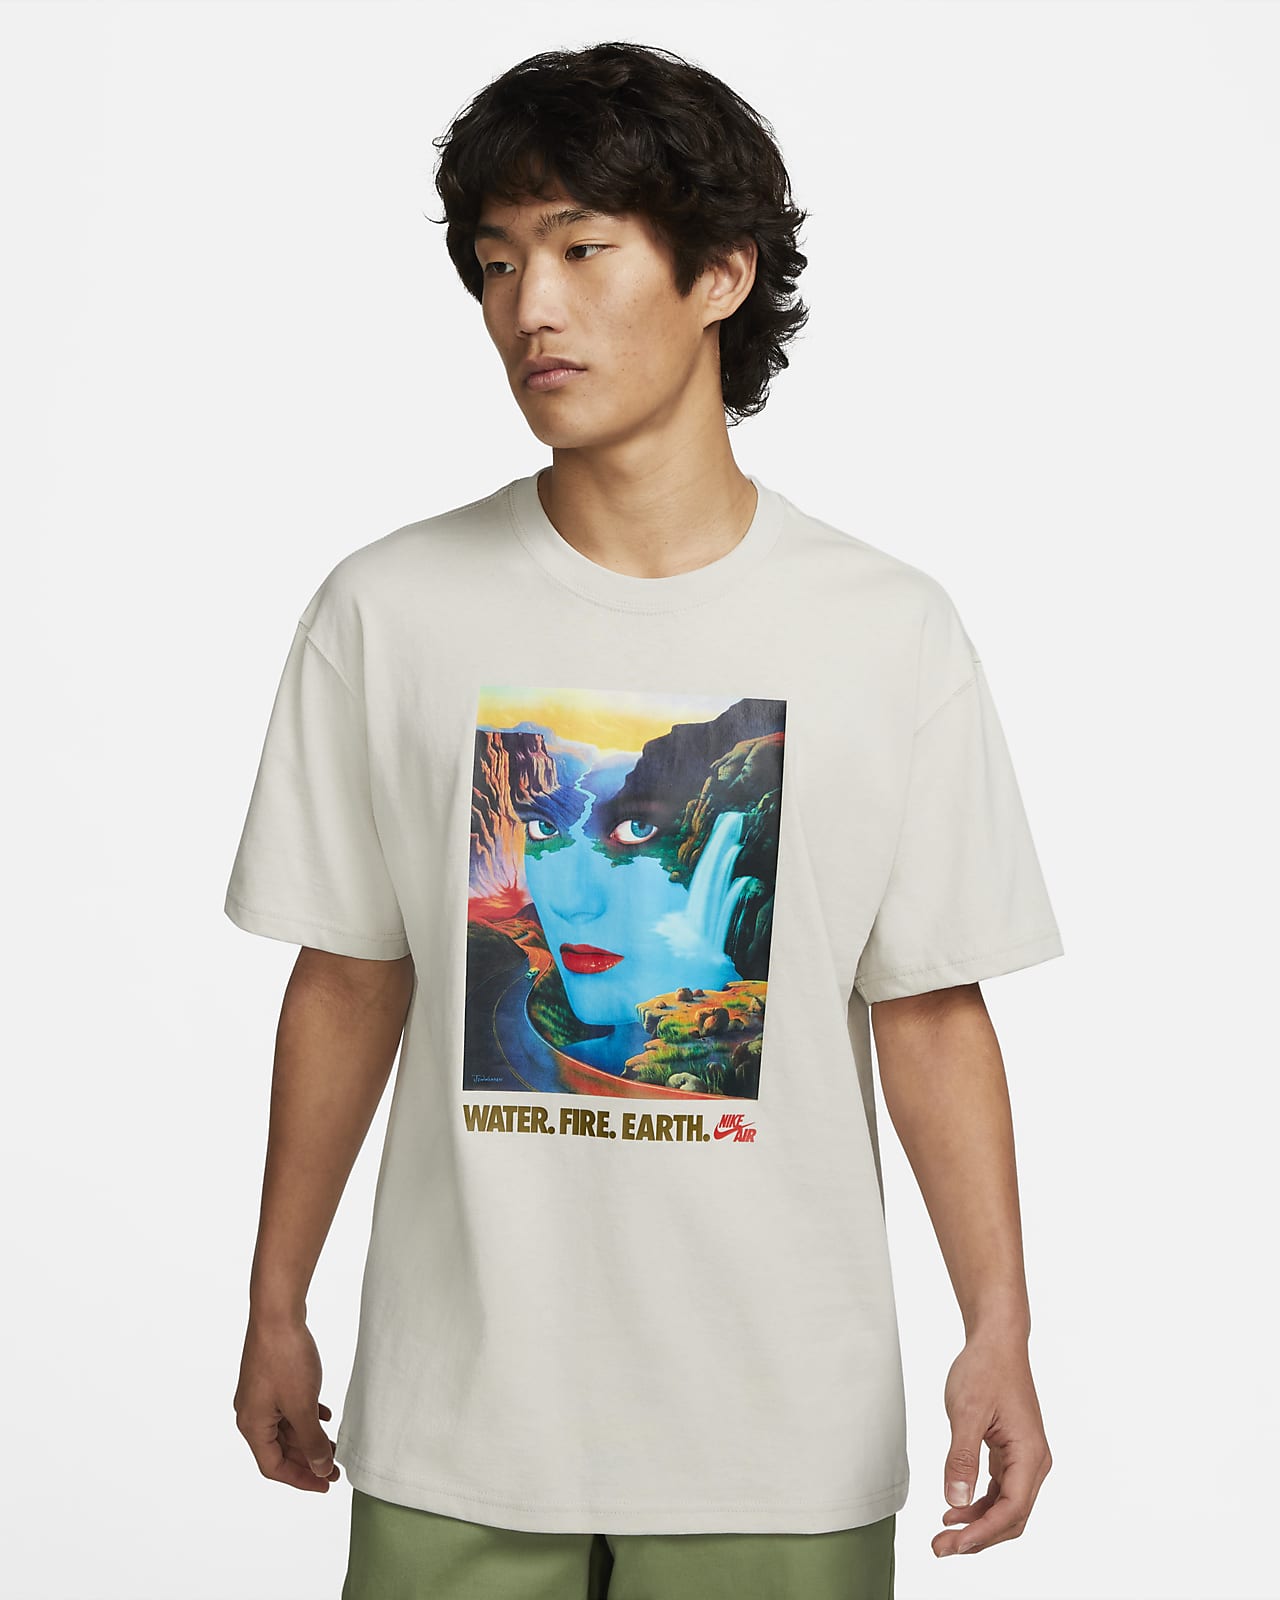 NBA Shirt/Sport Shirt/T-shirt (open for customize design), Men's